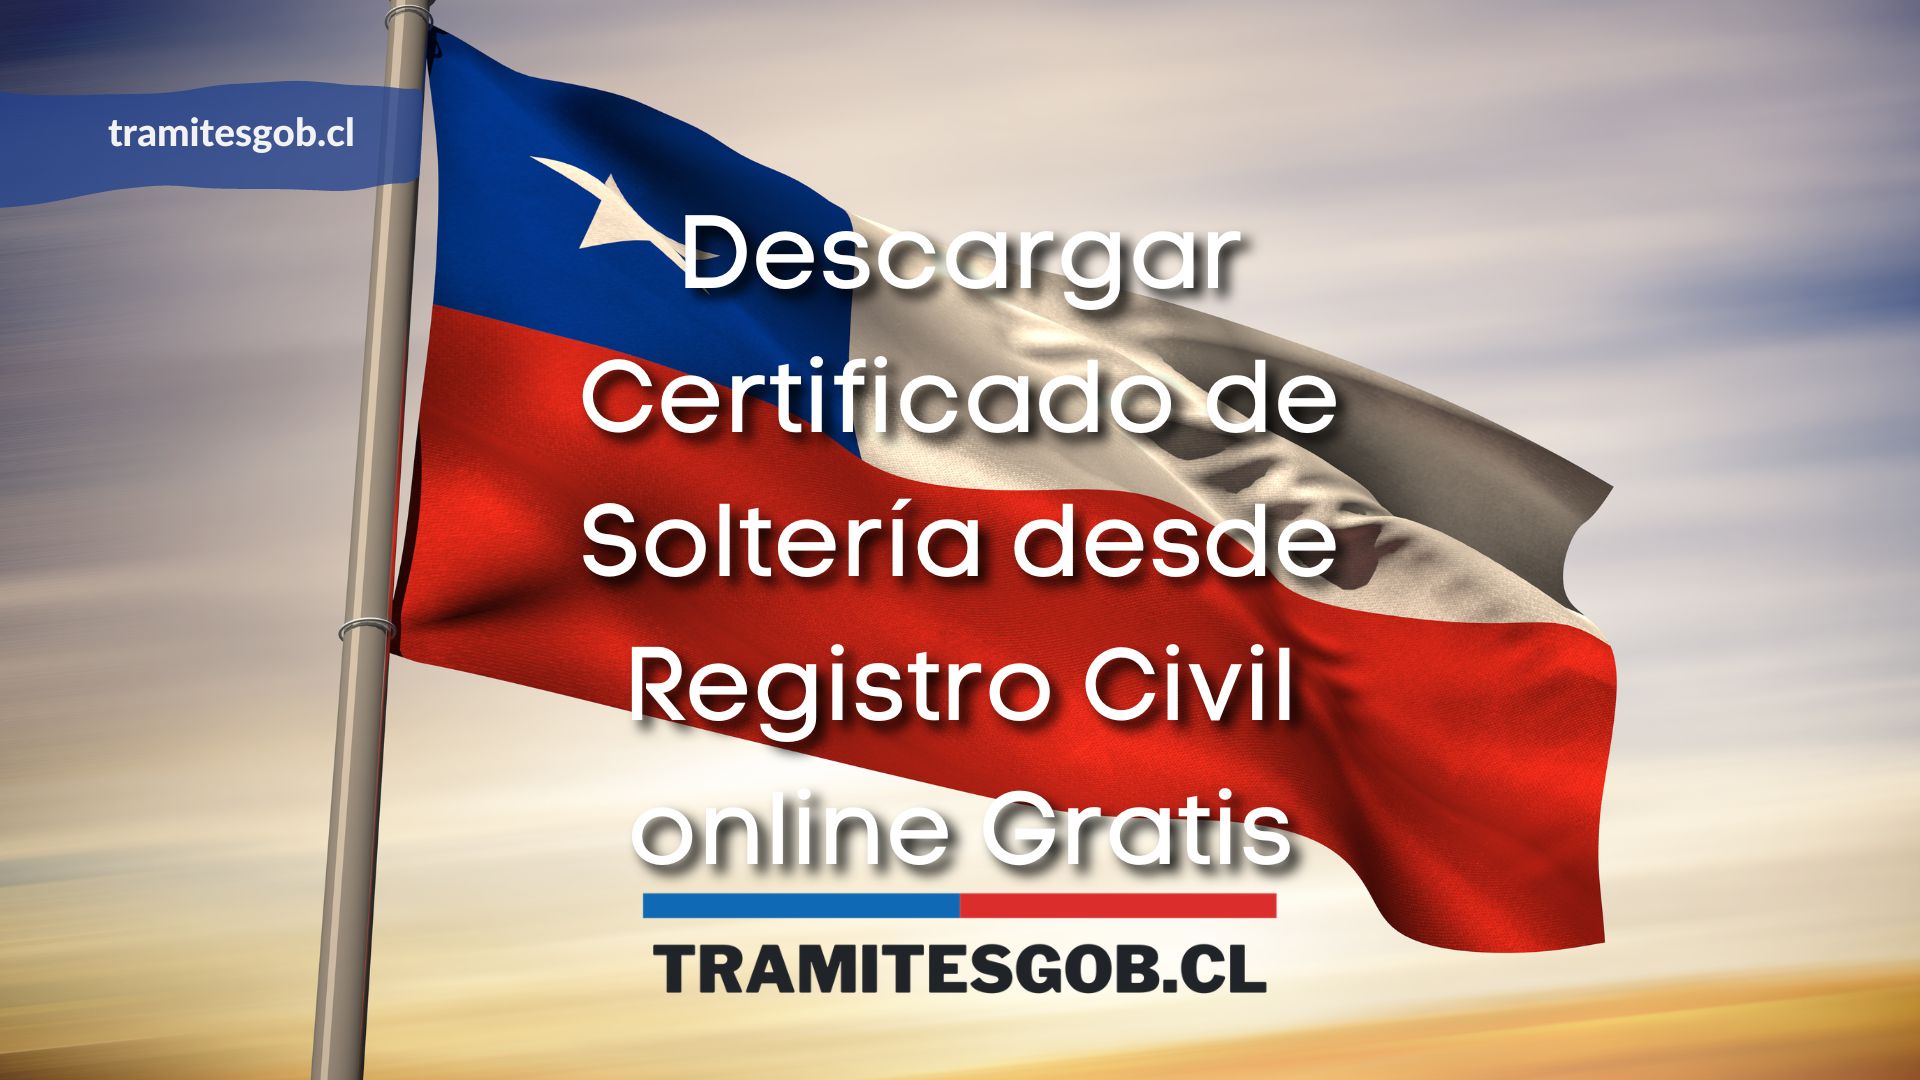 Descargar Certificado de Soltería desde Registro Civil online Gratis